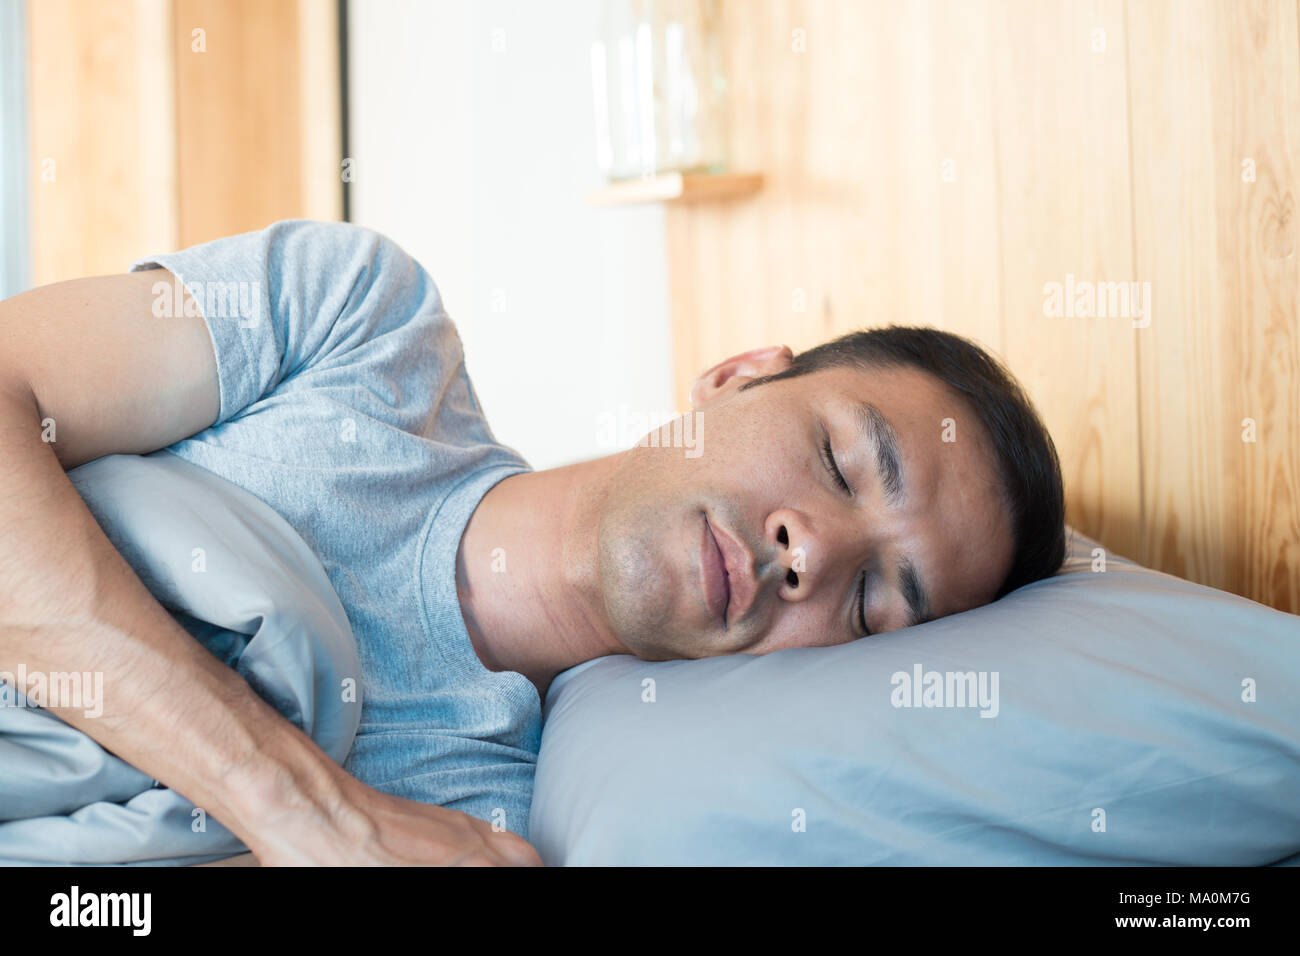 Asiatischer Mann schlafend auf dem Bett in seinem Zimmer und Glücklichkeit schlafen Stockfoto